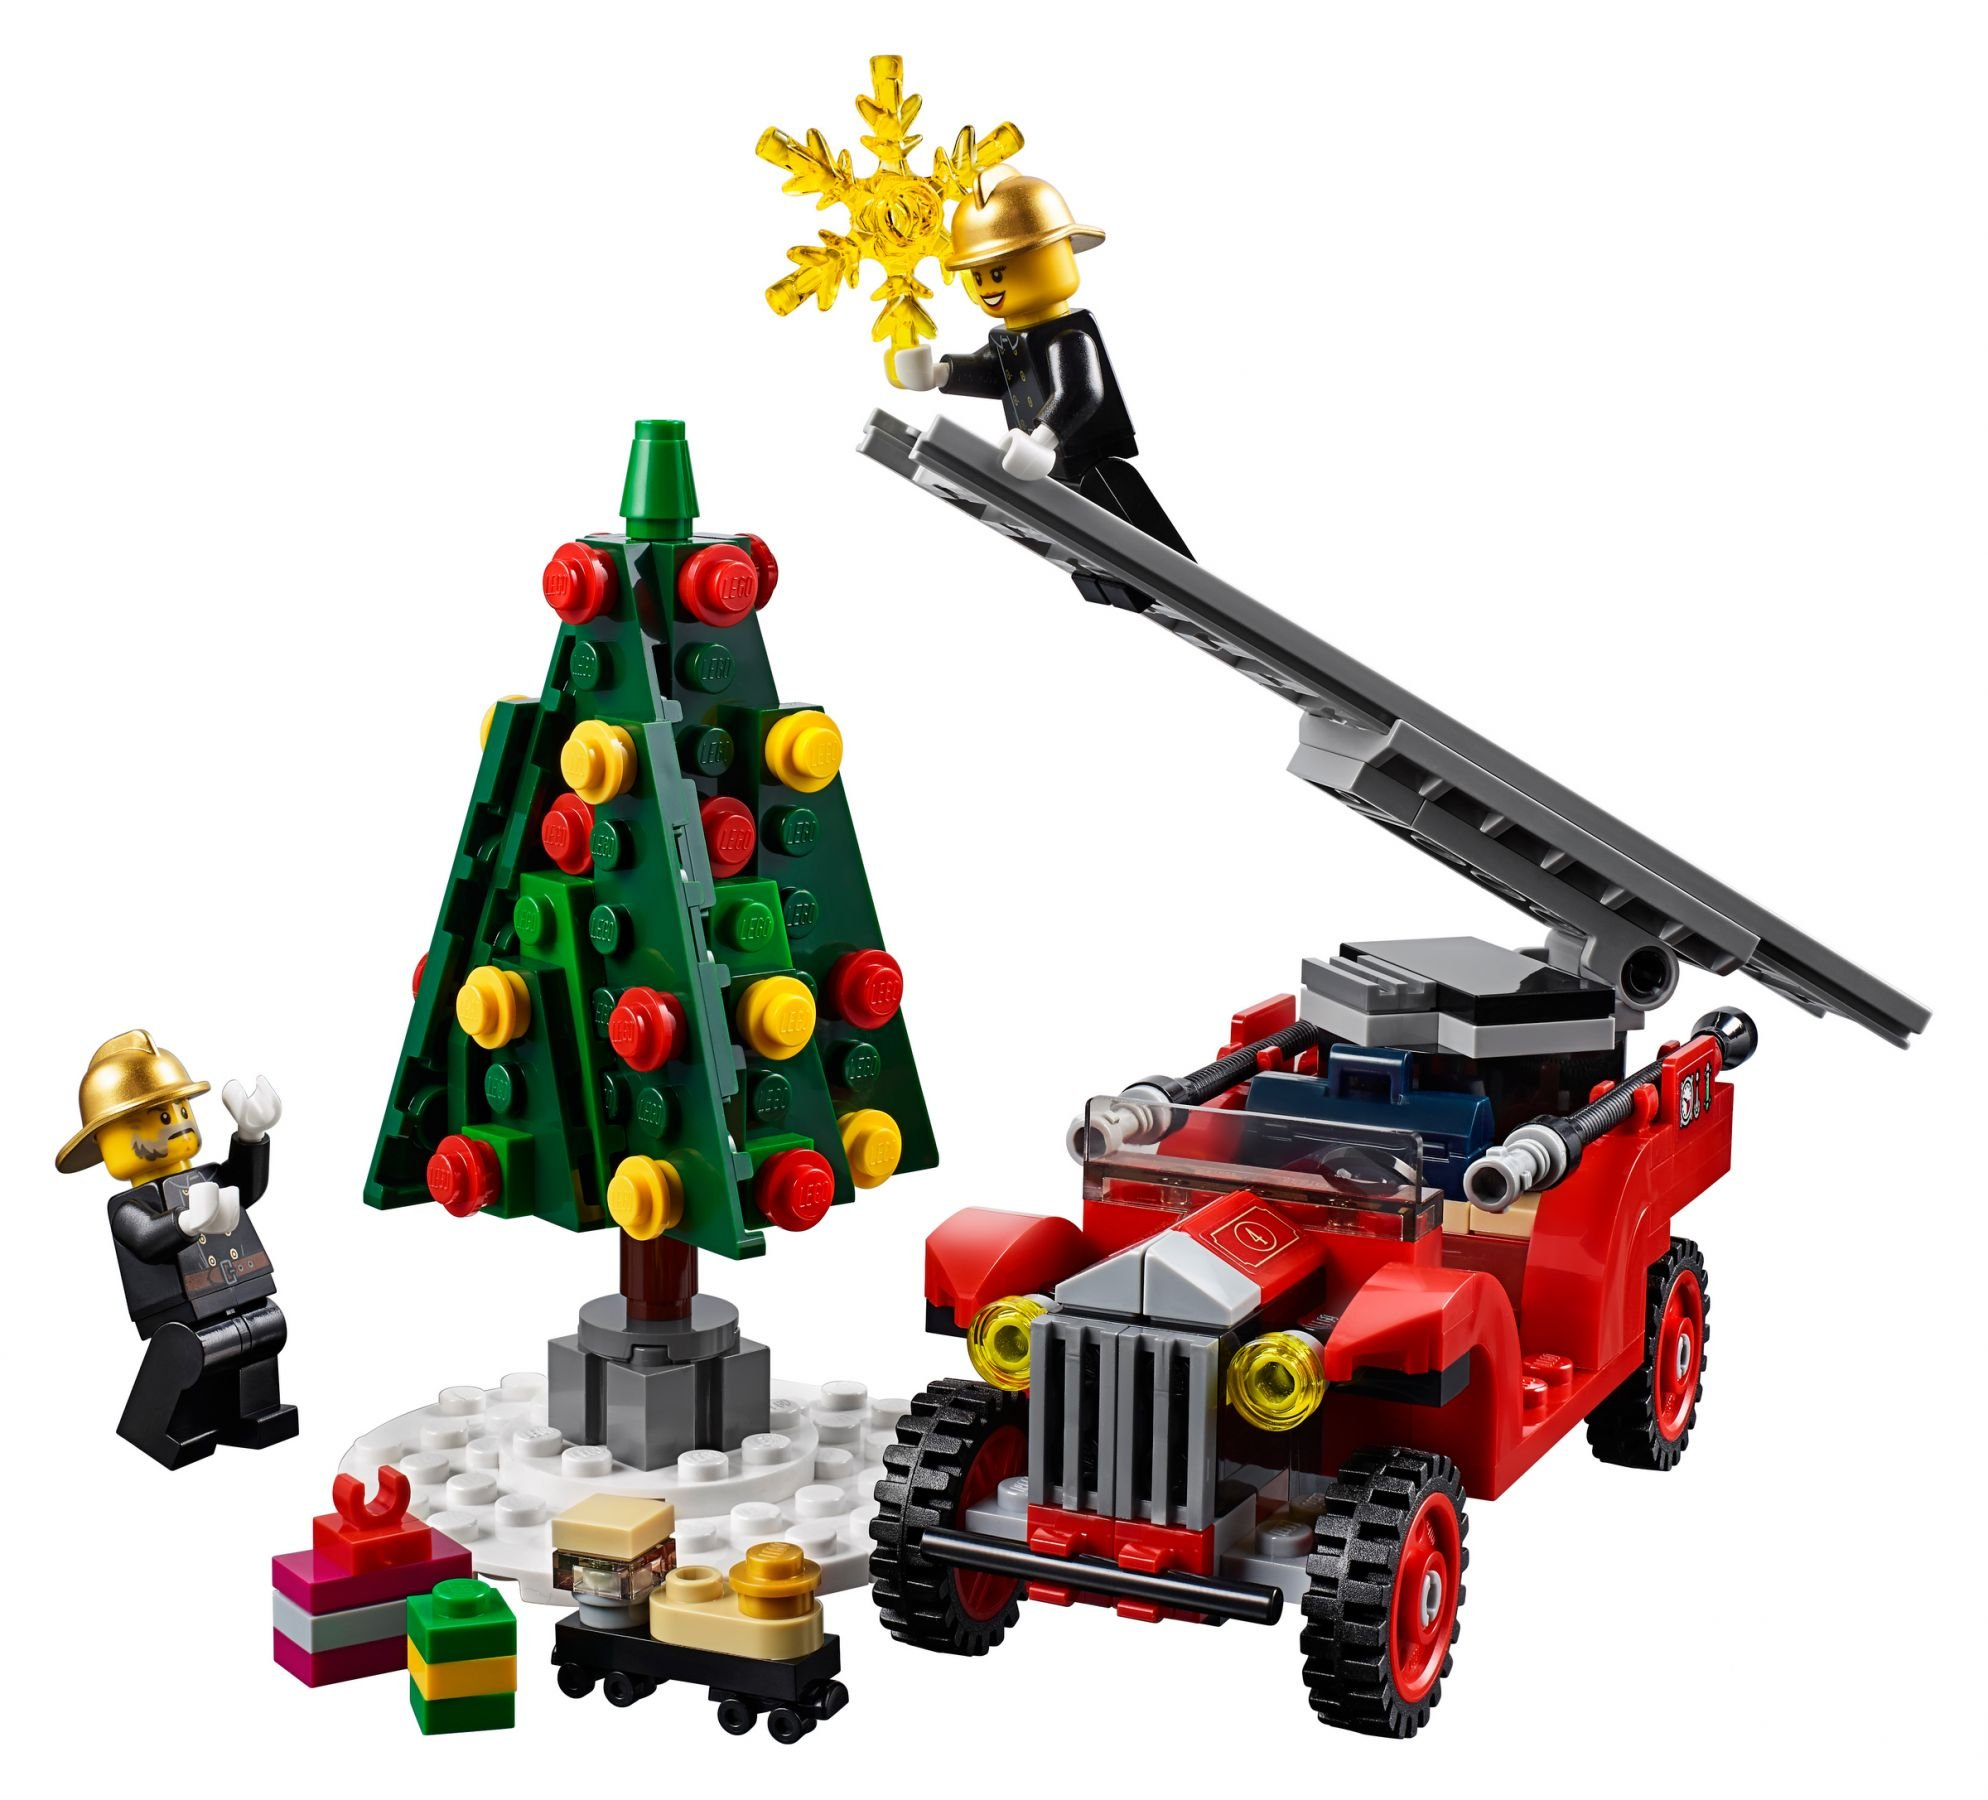 LEGO Creator Expert 10263 Winterliche Feuerwehrstation Bausatz